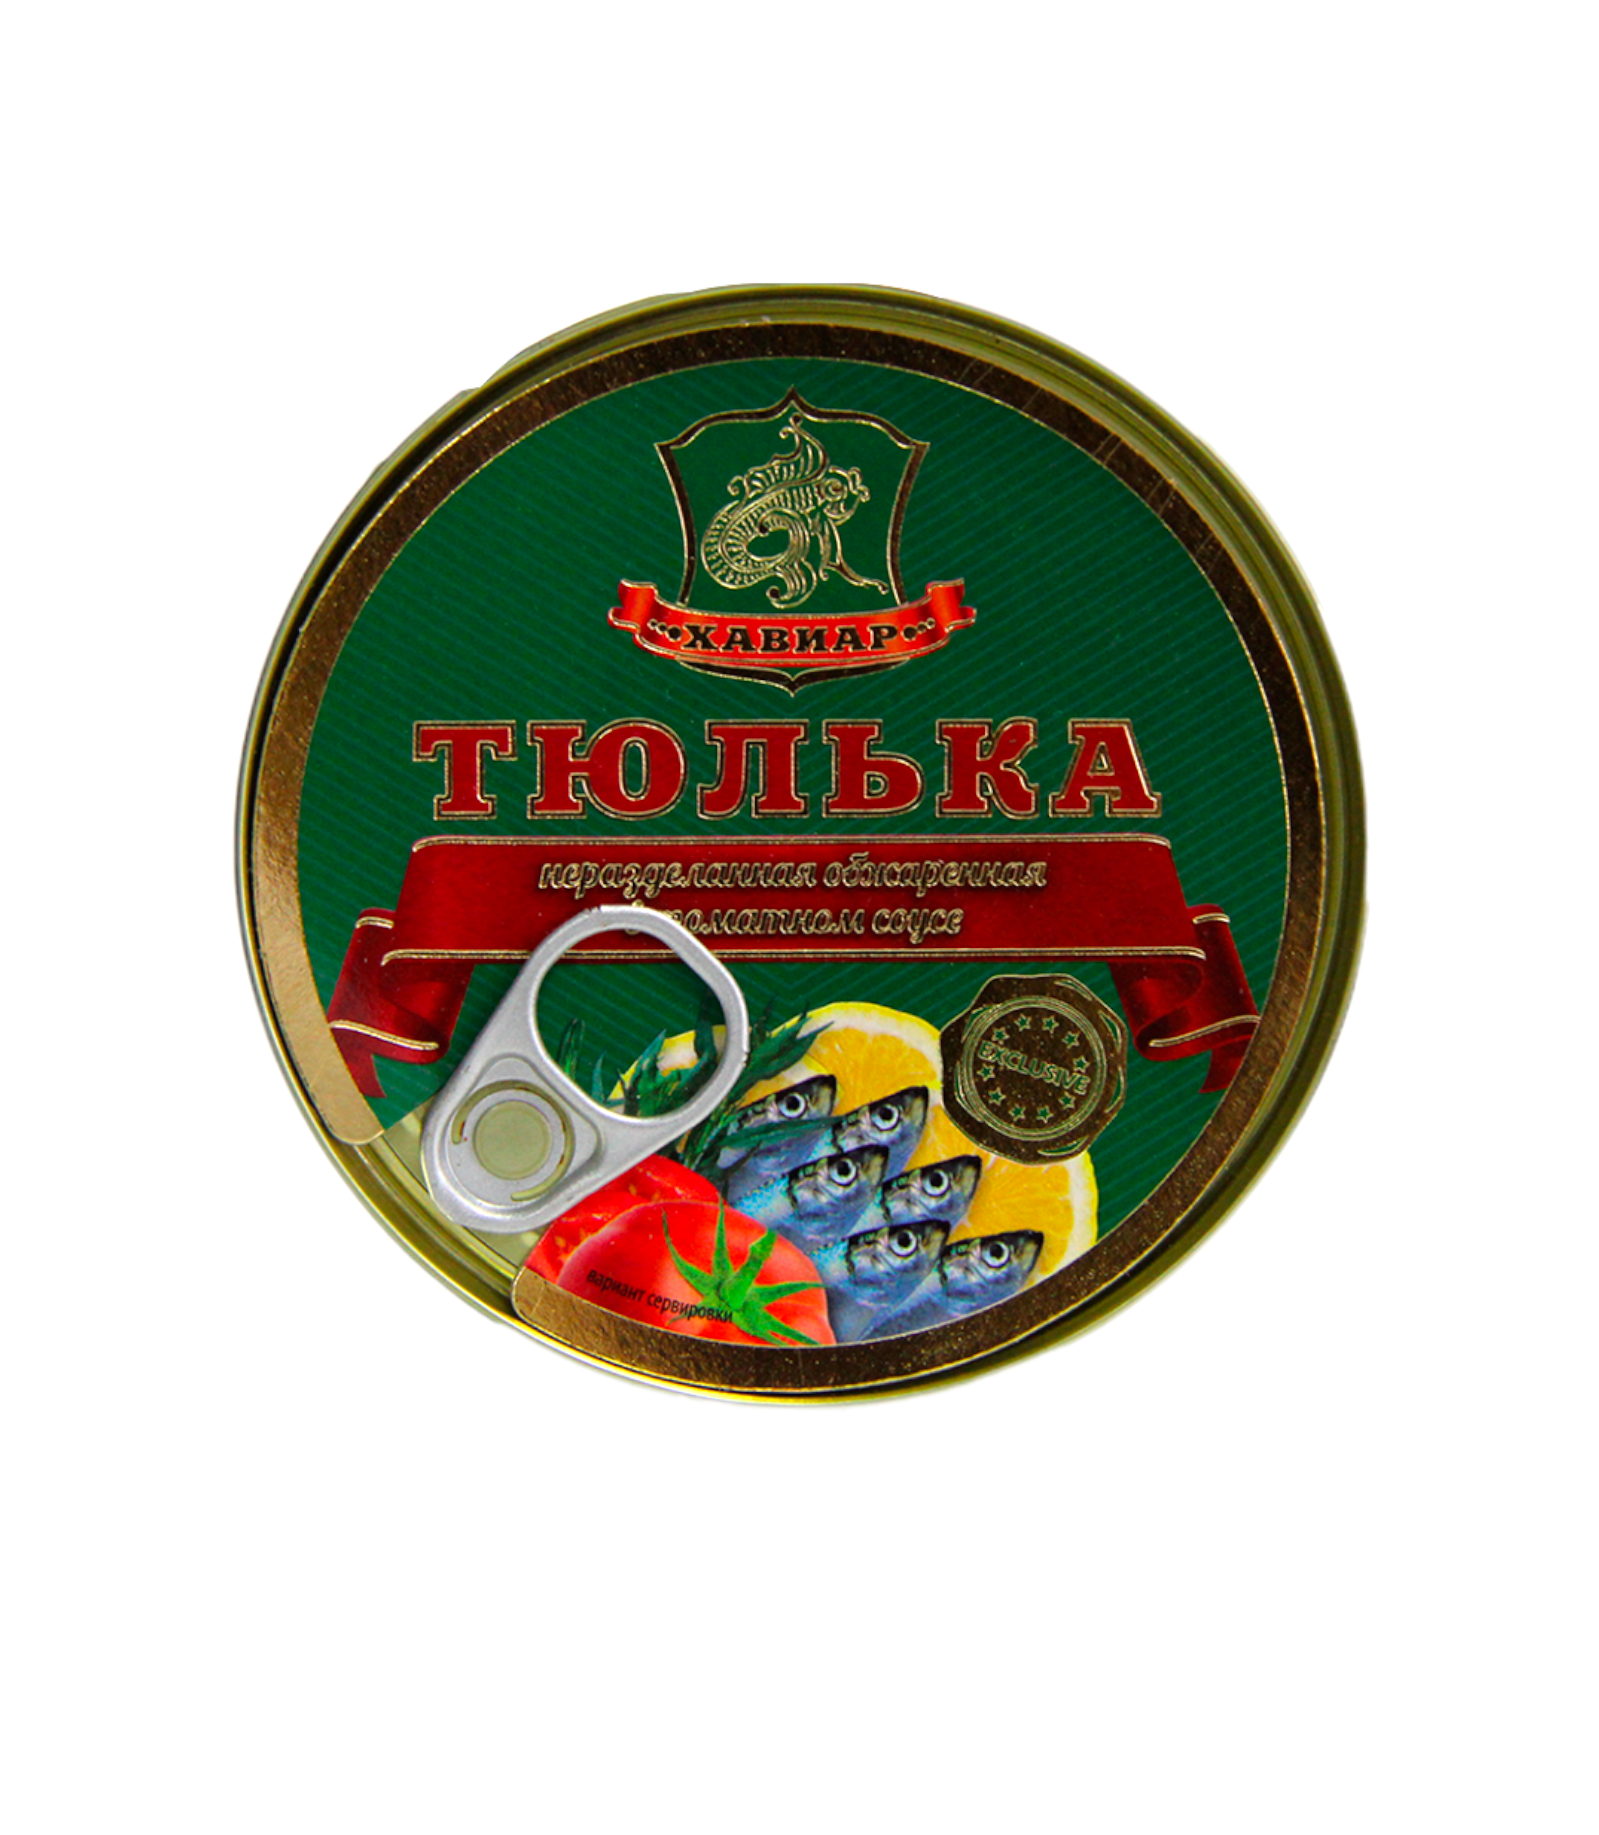 Тюлька обжаренная в томатном соусе, Хавиар, 1 шт. по 240 г